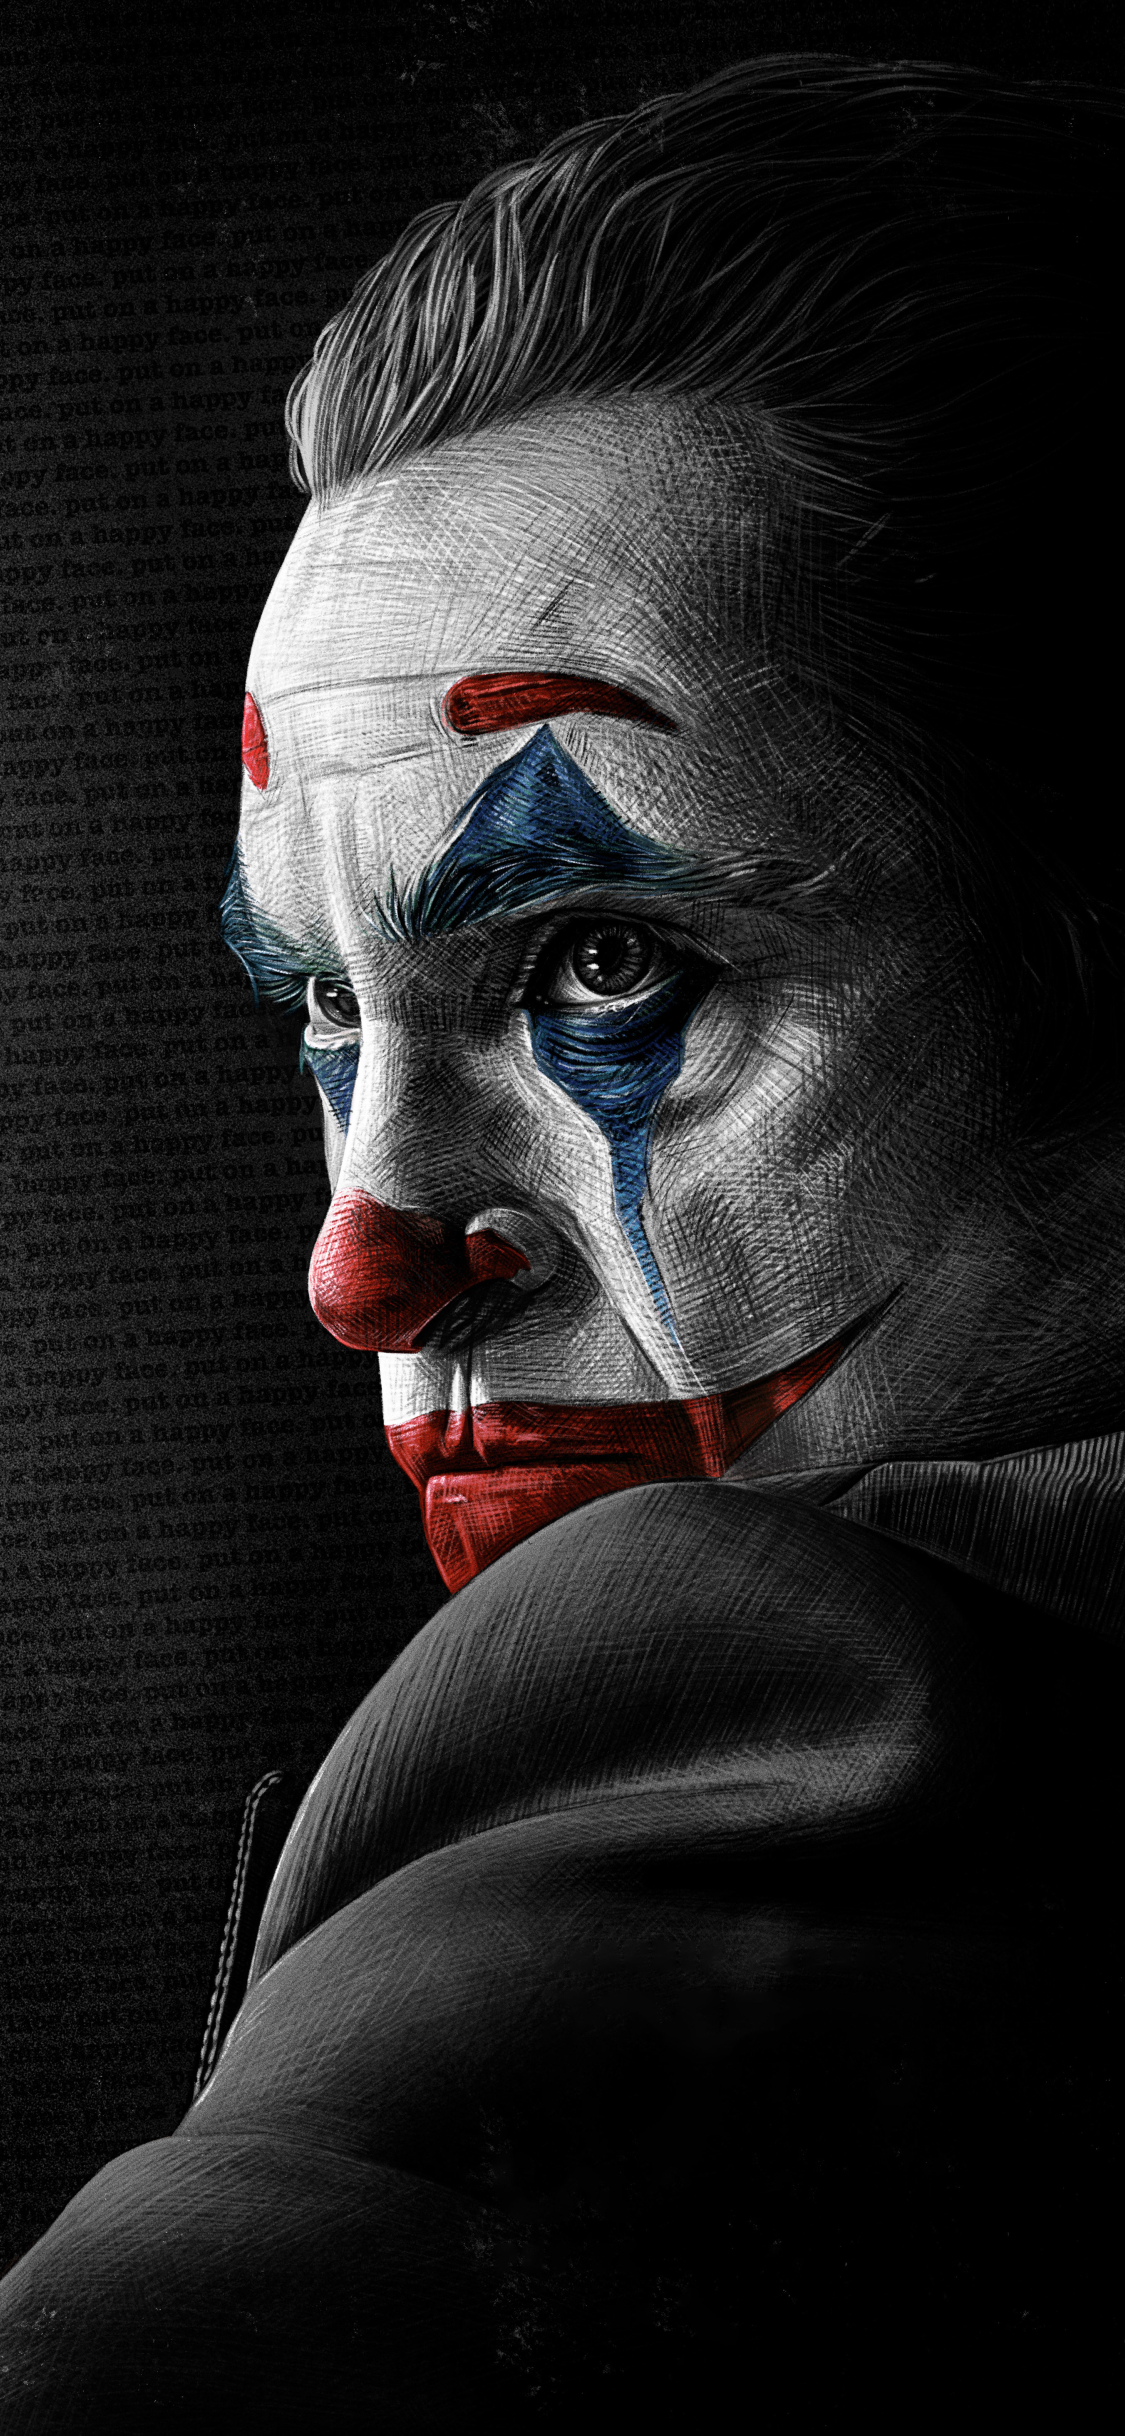 iPhone 4k Wallpaper Of Joker